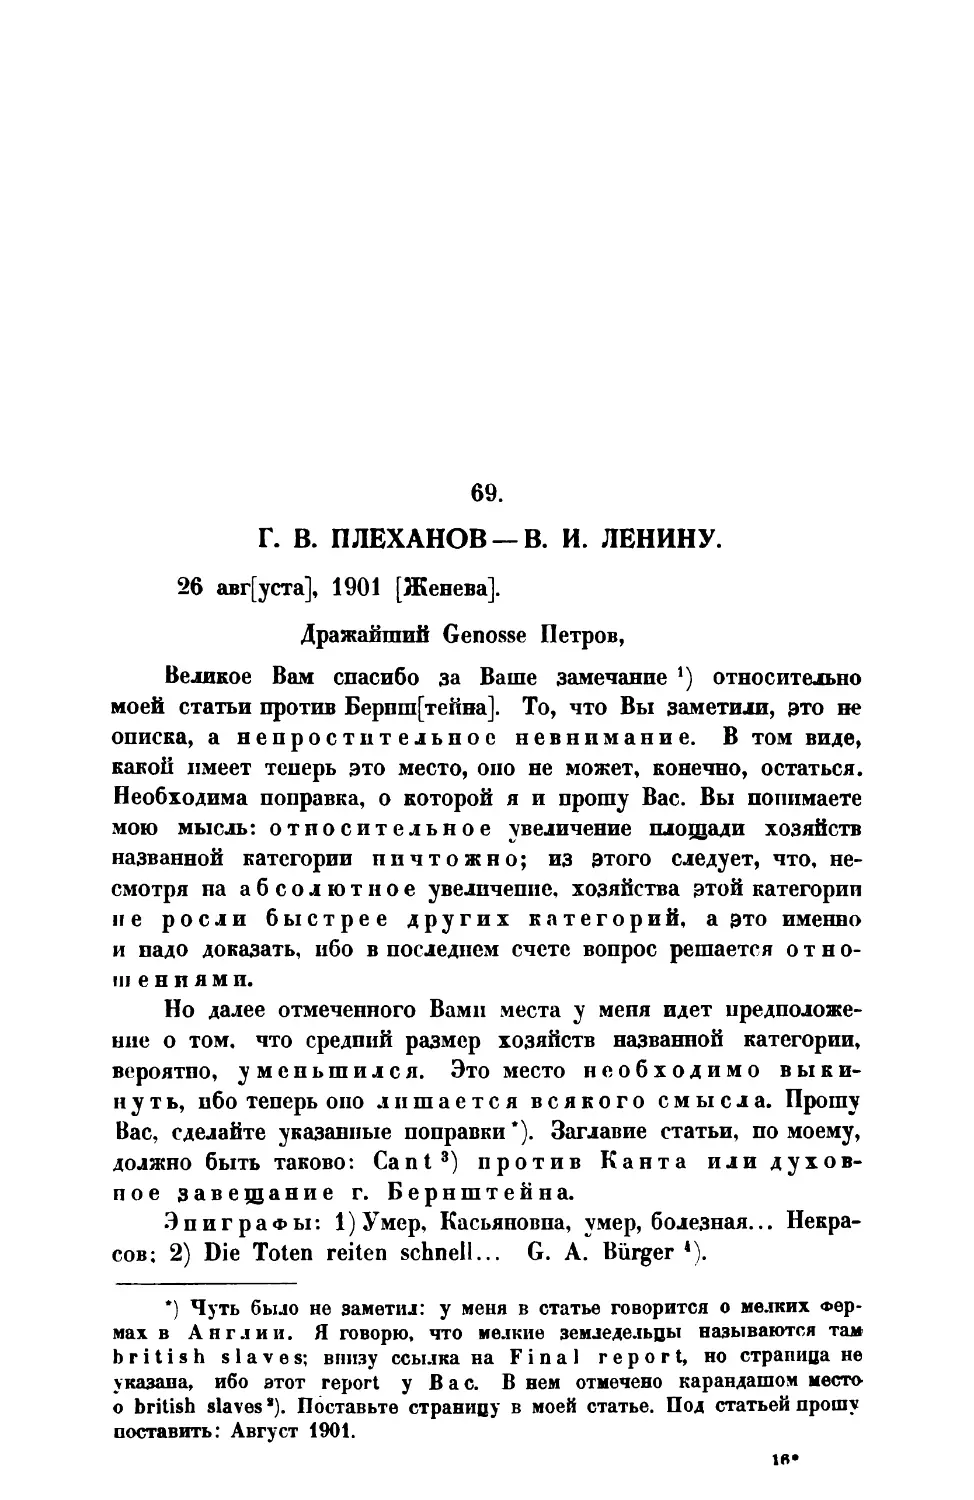 69. Г. В. Плеханов. — Письмо В. И Ленину от 26 VIII 1901г.